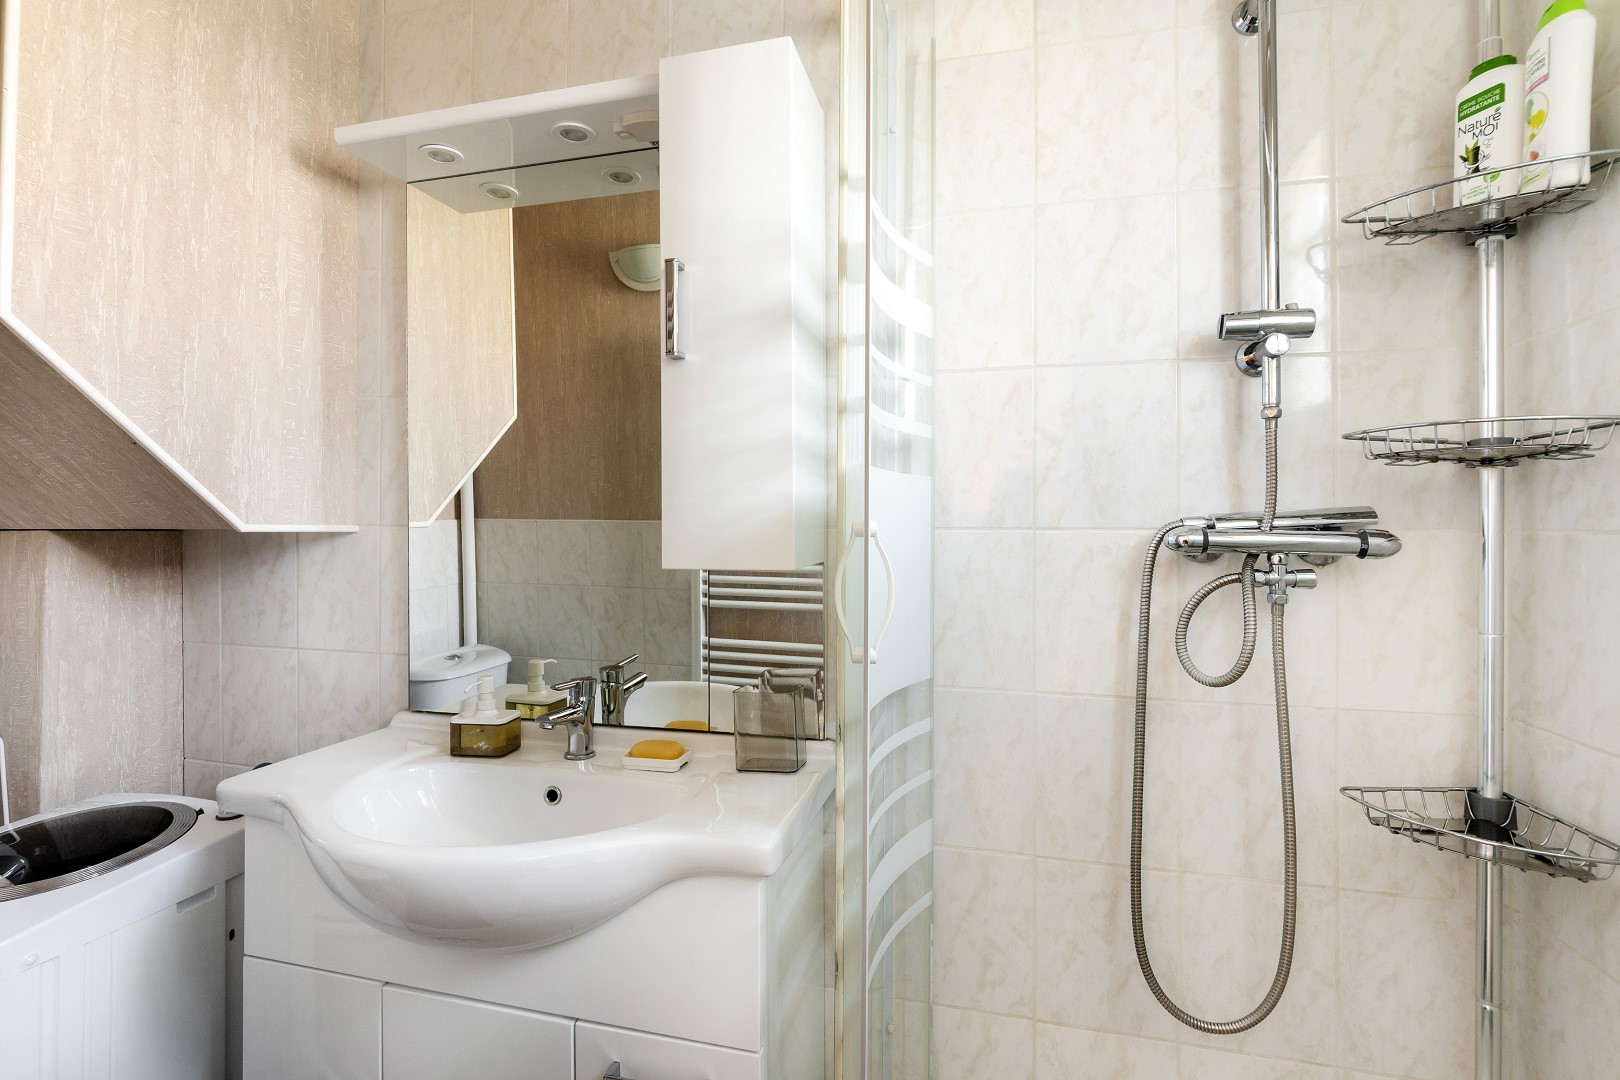 Salle de bain avec douche et lave-linge tout confort dans hébergement pas cher dans résidence calme en plein centre ville de Marcoussis